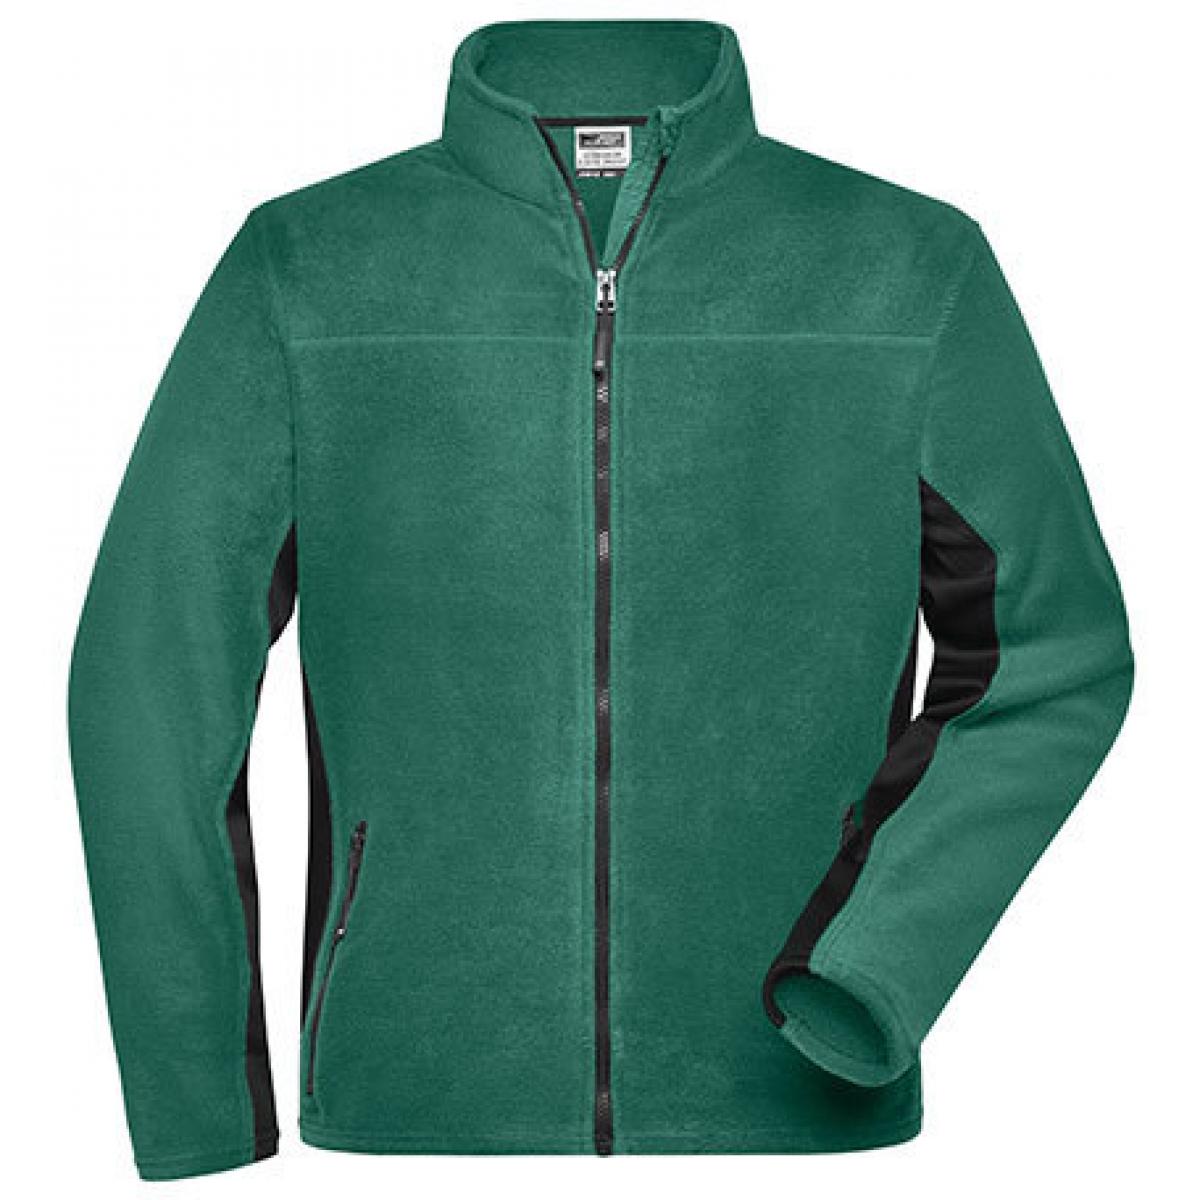 Hersteller: James+Nicholson Herstellernummer: JN842 Artikelbezeichnung: Herren Jacke, Men‘s Workwear Fleece Jacket -STRONG- Farbe: Dark Green/Black